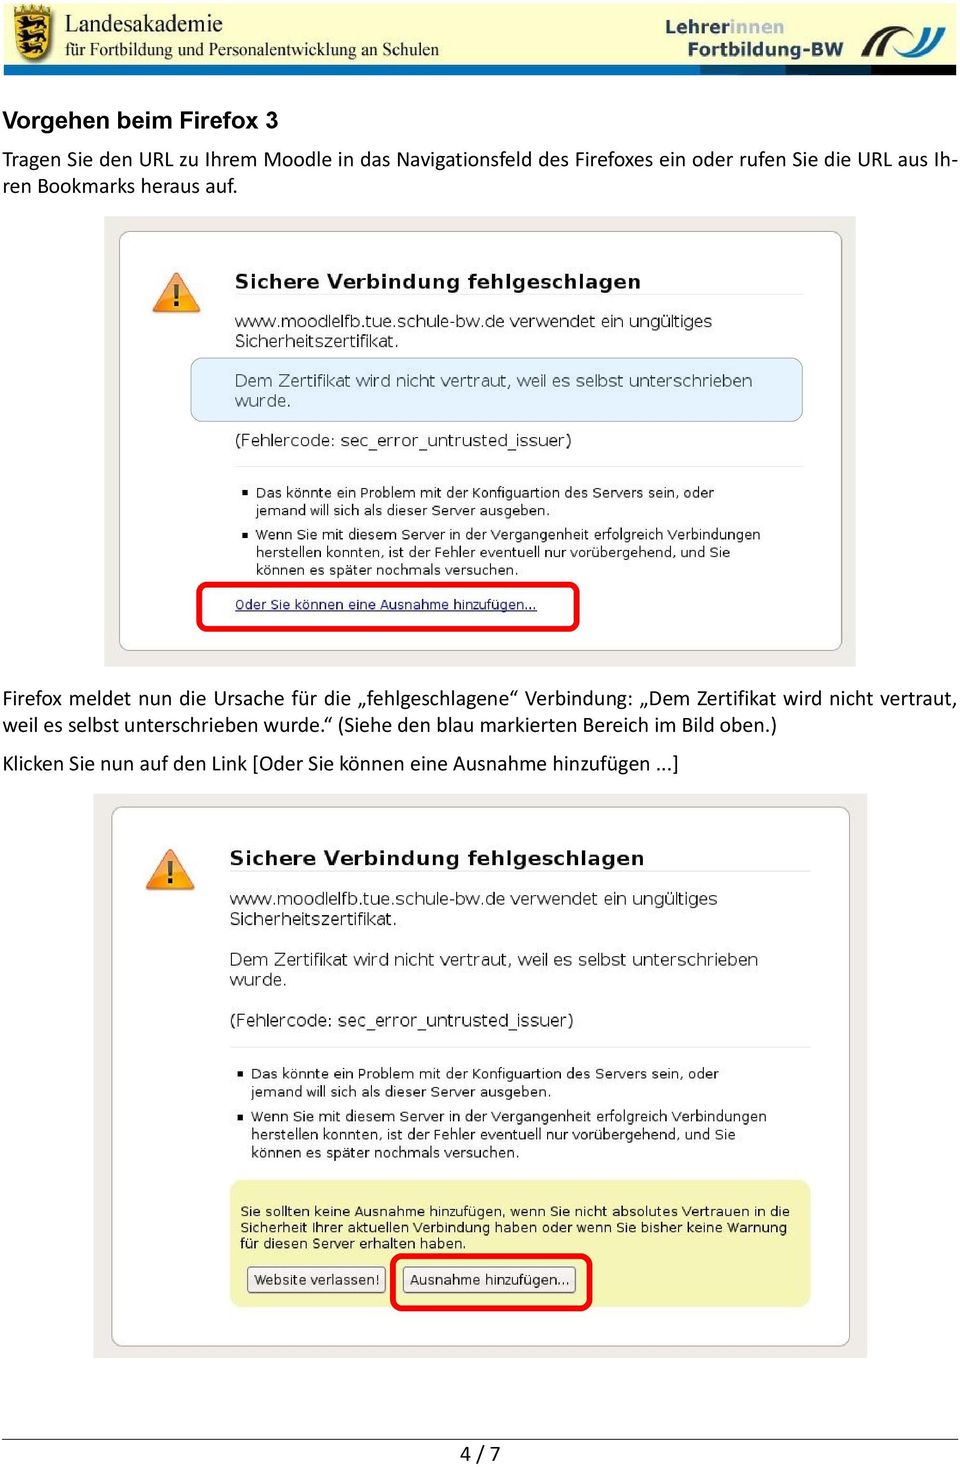 Firefox meldet nun die Ursache für die fehlgeschlagene Verbindung: Dem Zertifikat wird nicht vertraut,